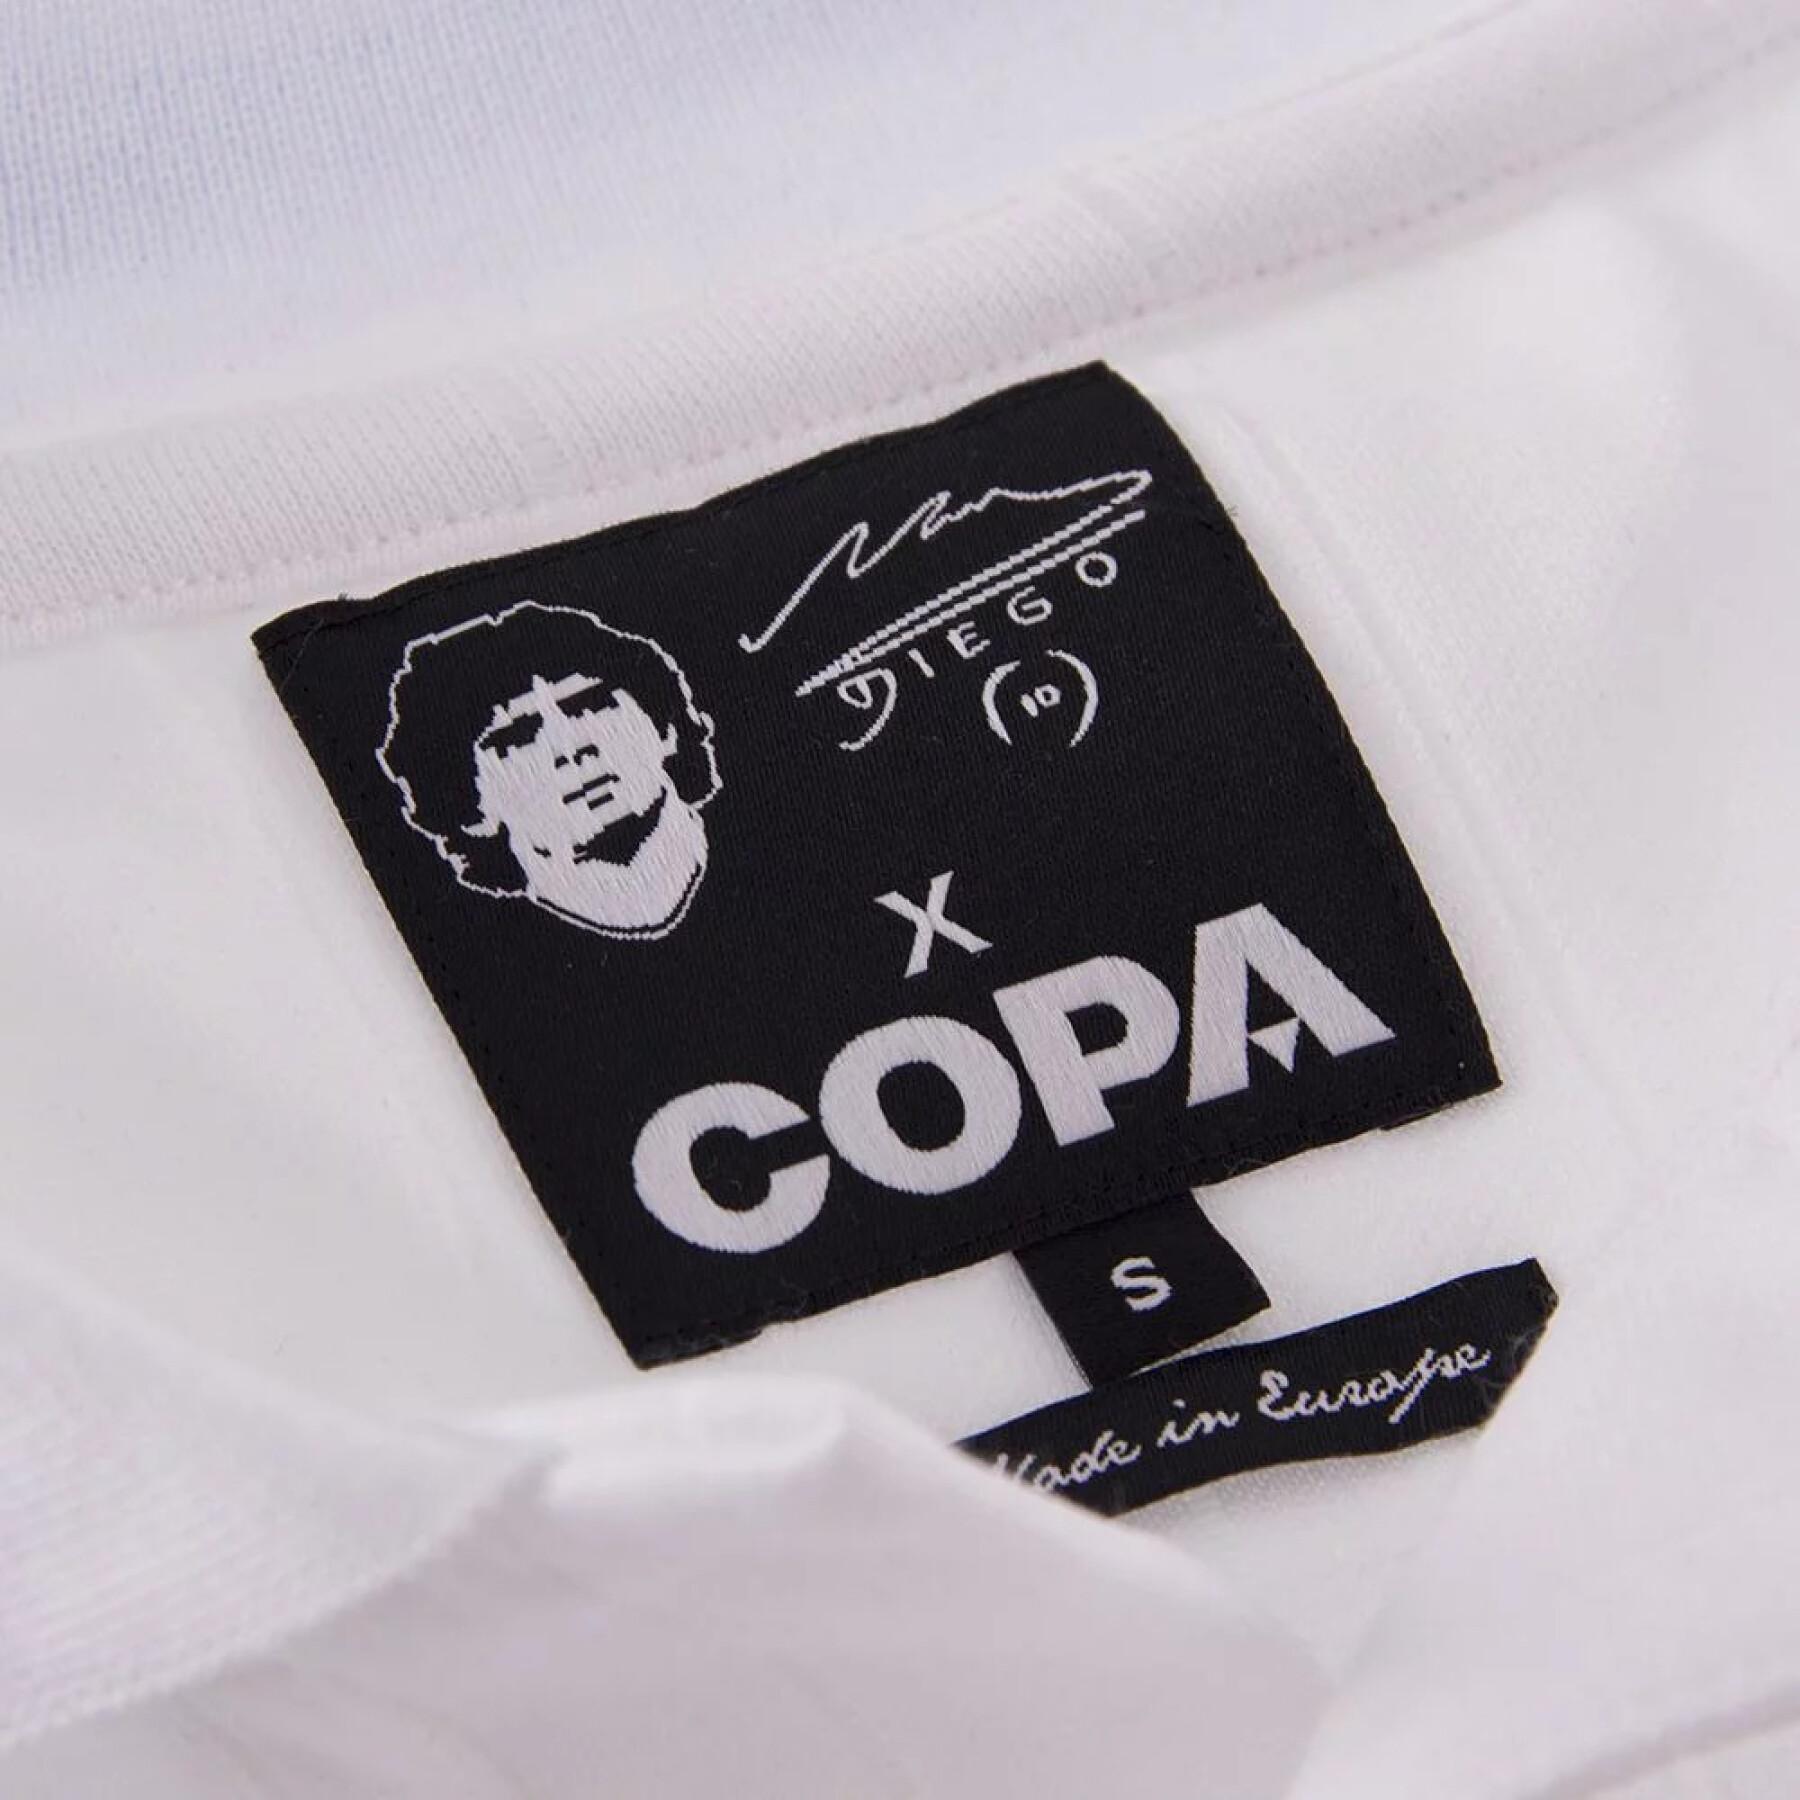 Camiseta Copa Maradona SSC Napoli 1986-87 Away Retro